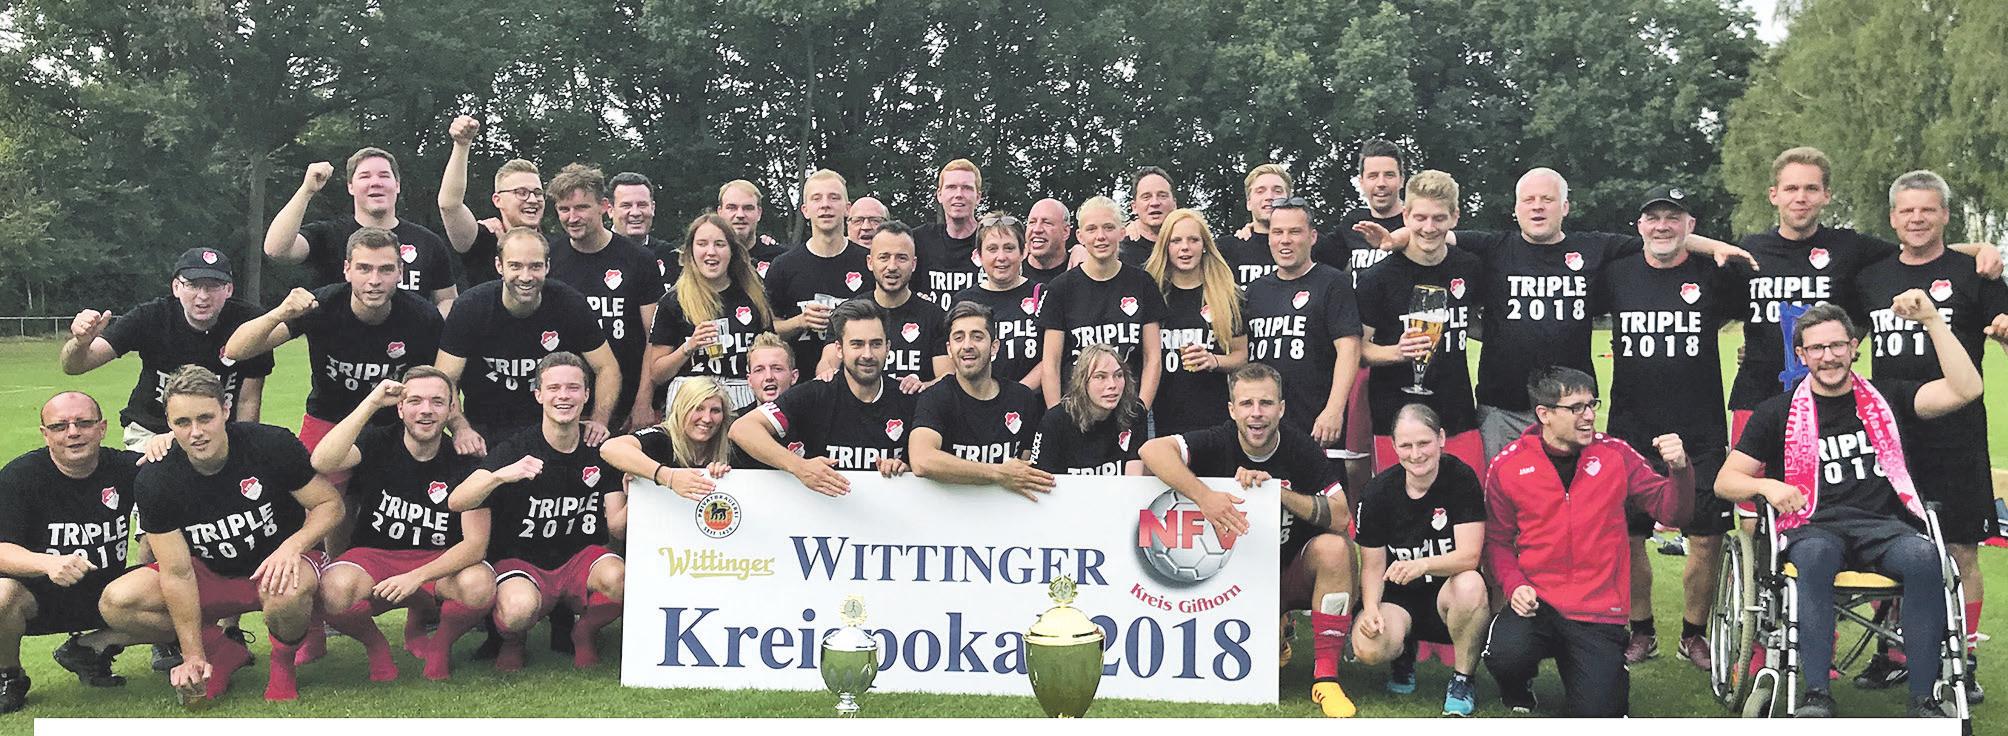 Stellen sich gemeinsam zur Wahl: Sowohl die 1. Herrenmannschaft als auch das Team Frauen des VfR Wilsche-Neubikel haben 2018 ein Triple geschafft.